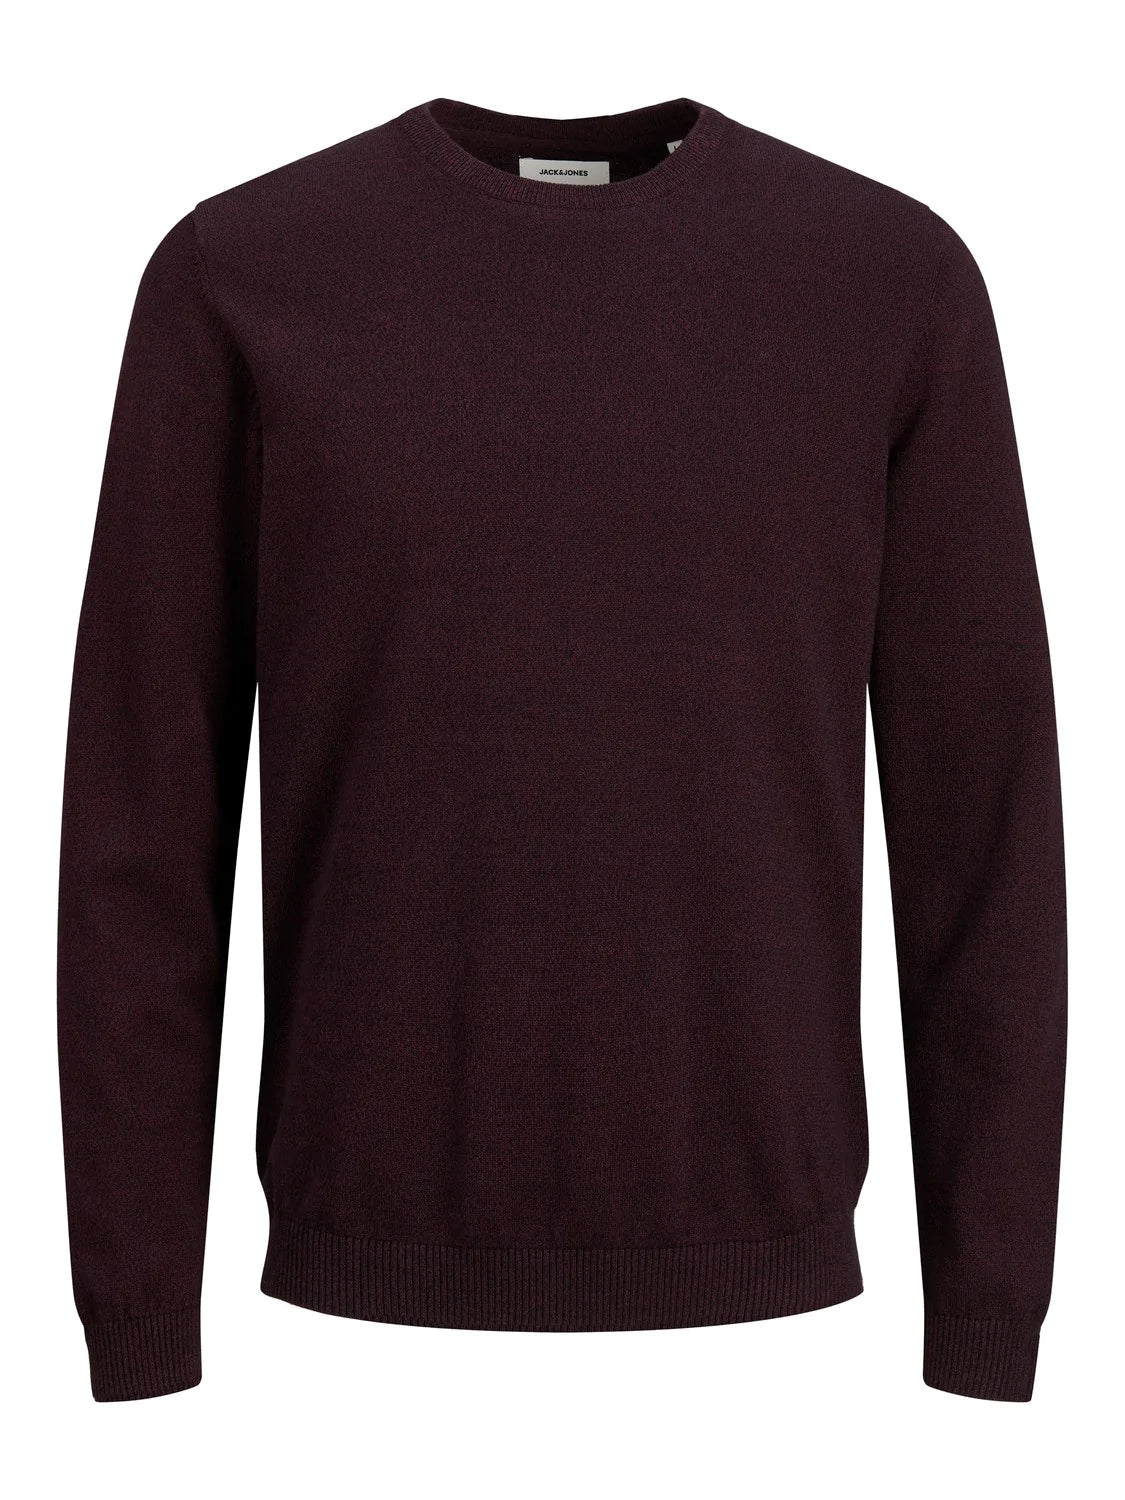 Jack&Jones men's burgundy long-sleeved sweater